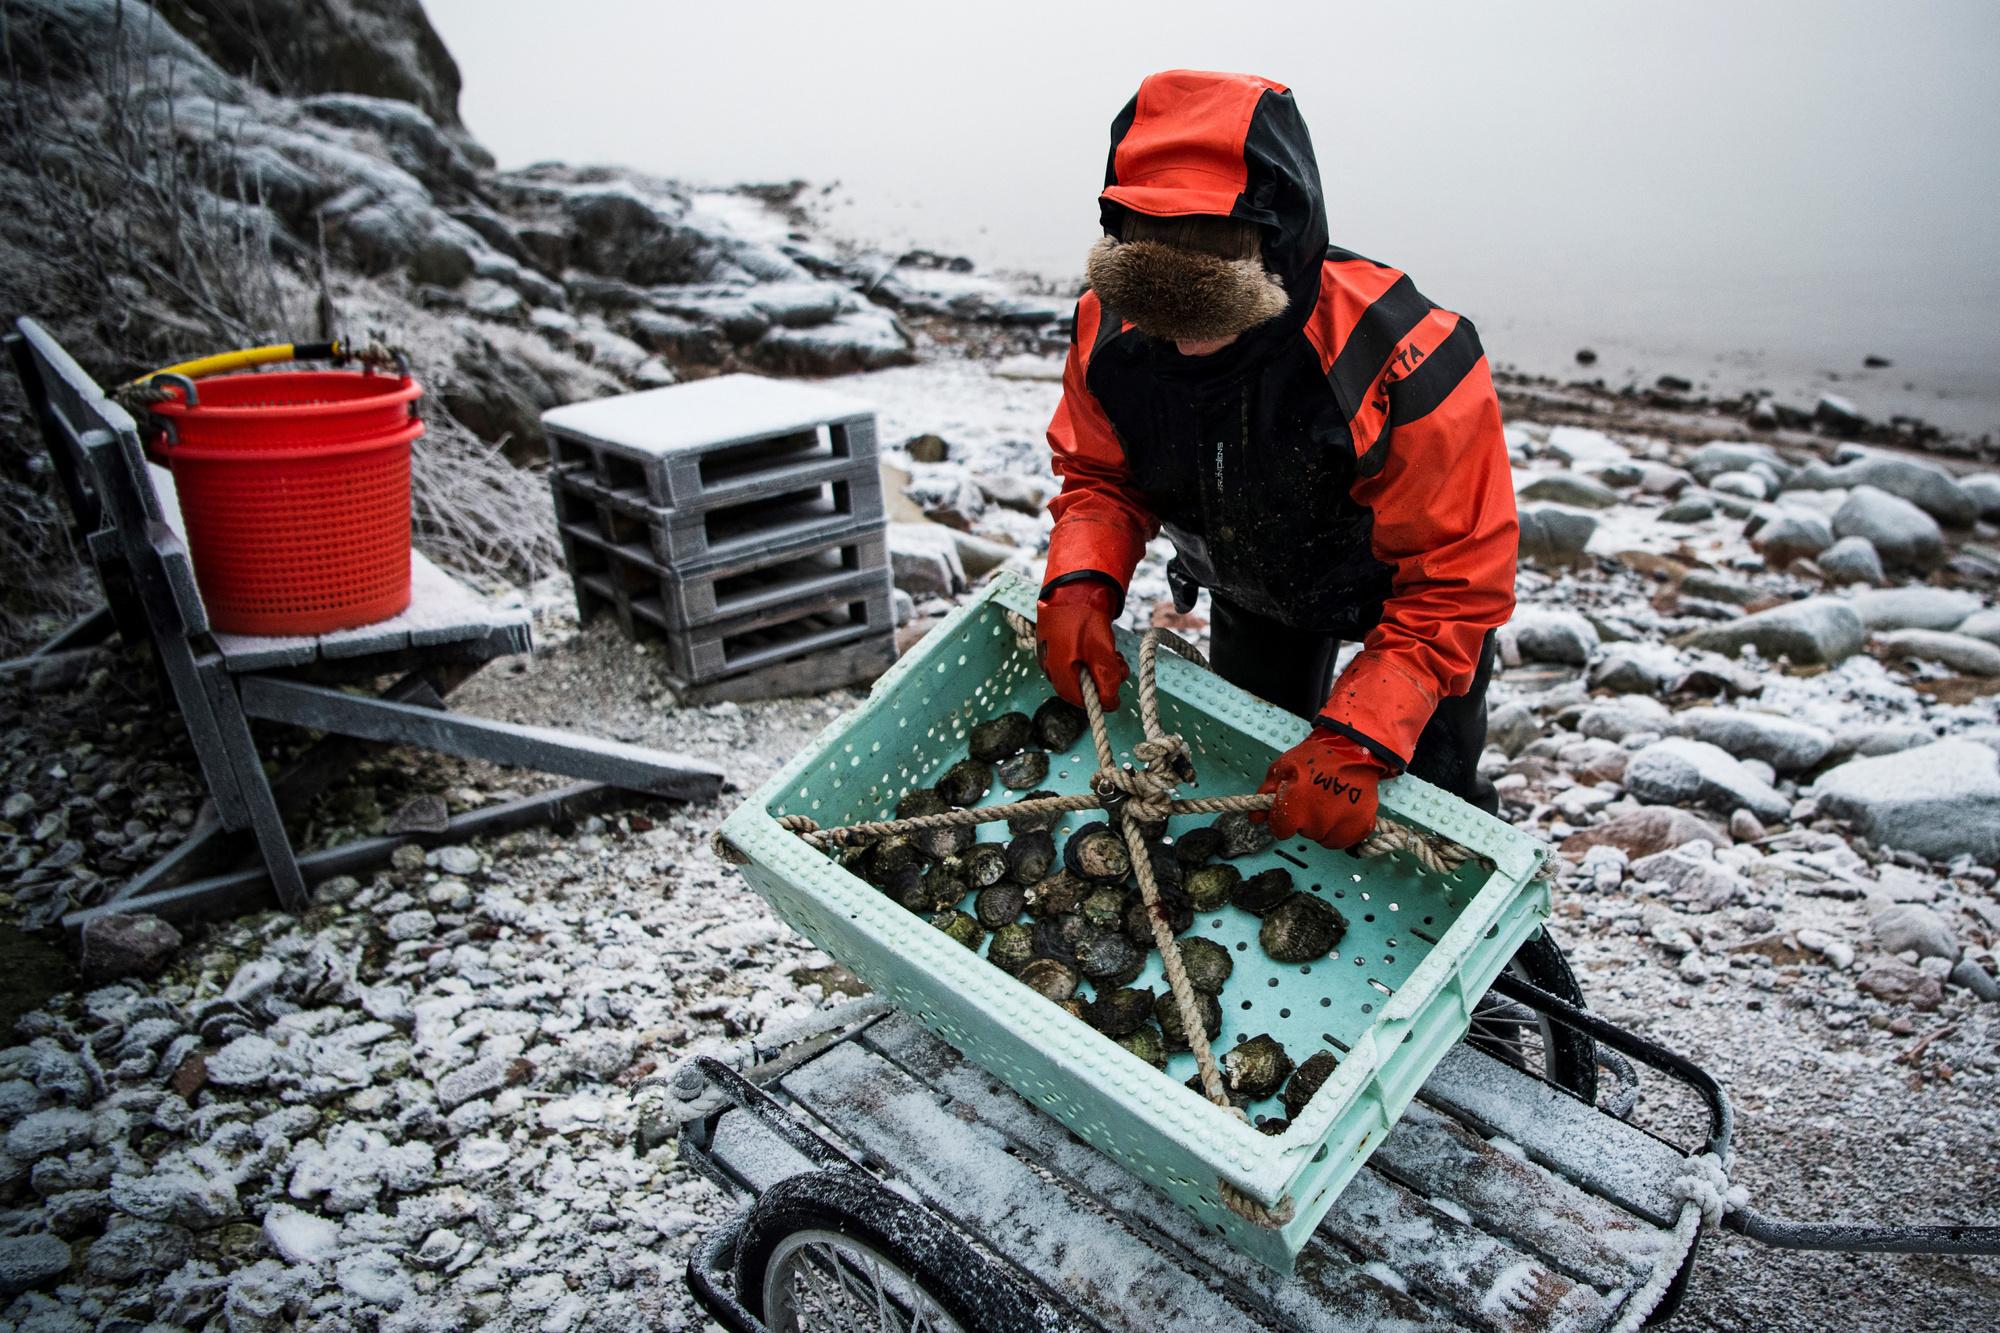 Dans les eaux glacées en Suède, une plongeuse unique en son genre (en images)